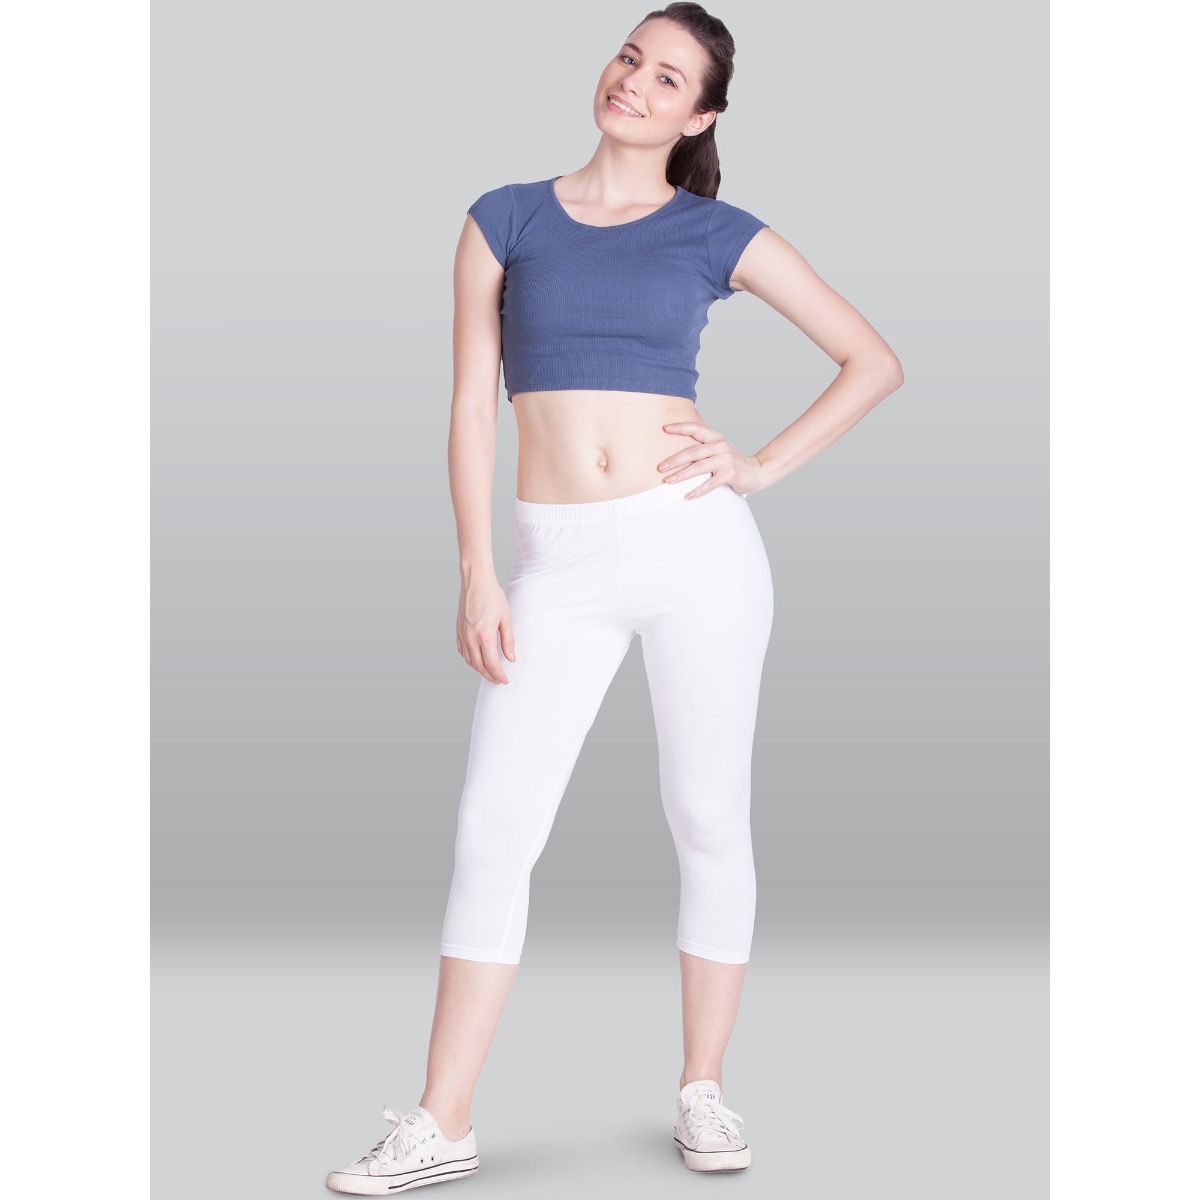 Lux Lyra White Churidar Leggings free Size for Girls – Stilento